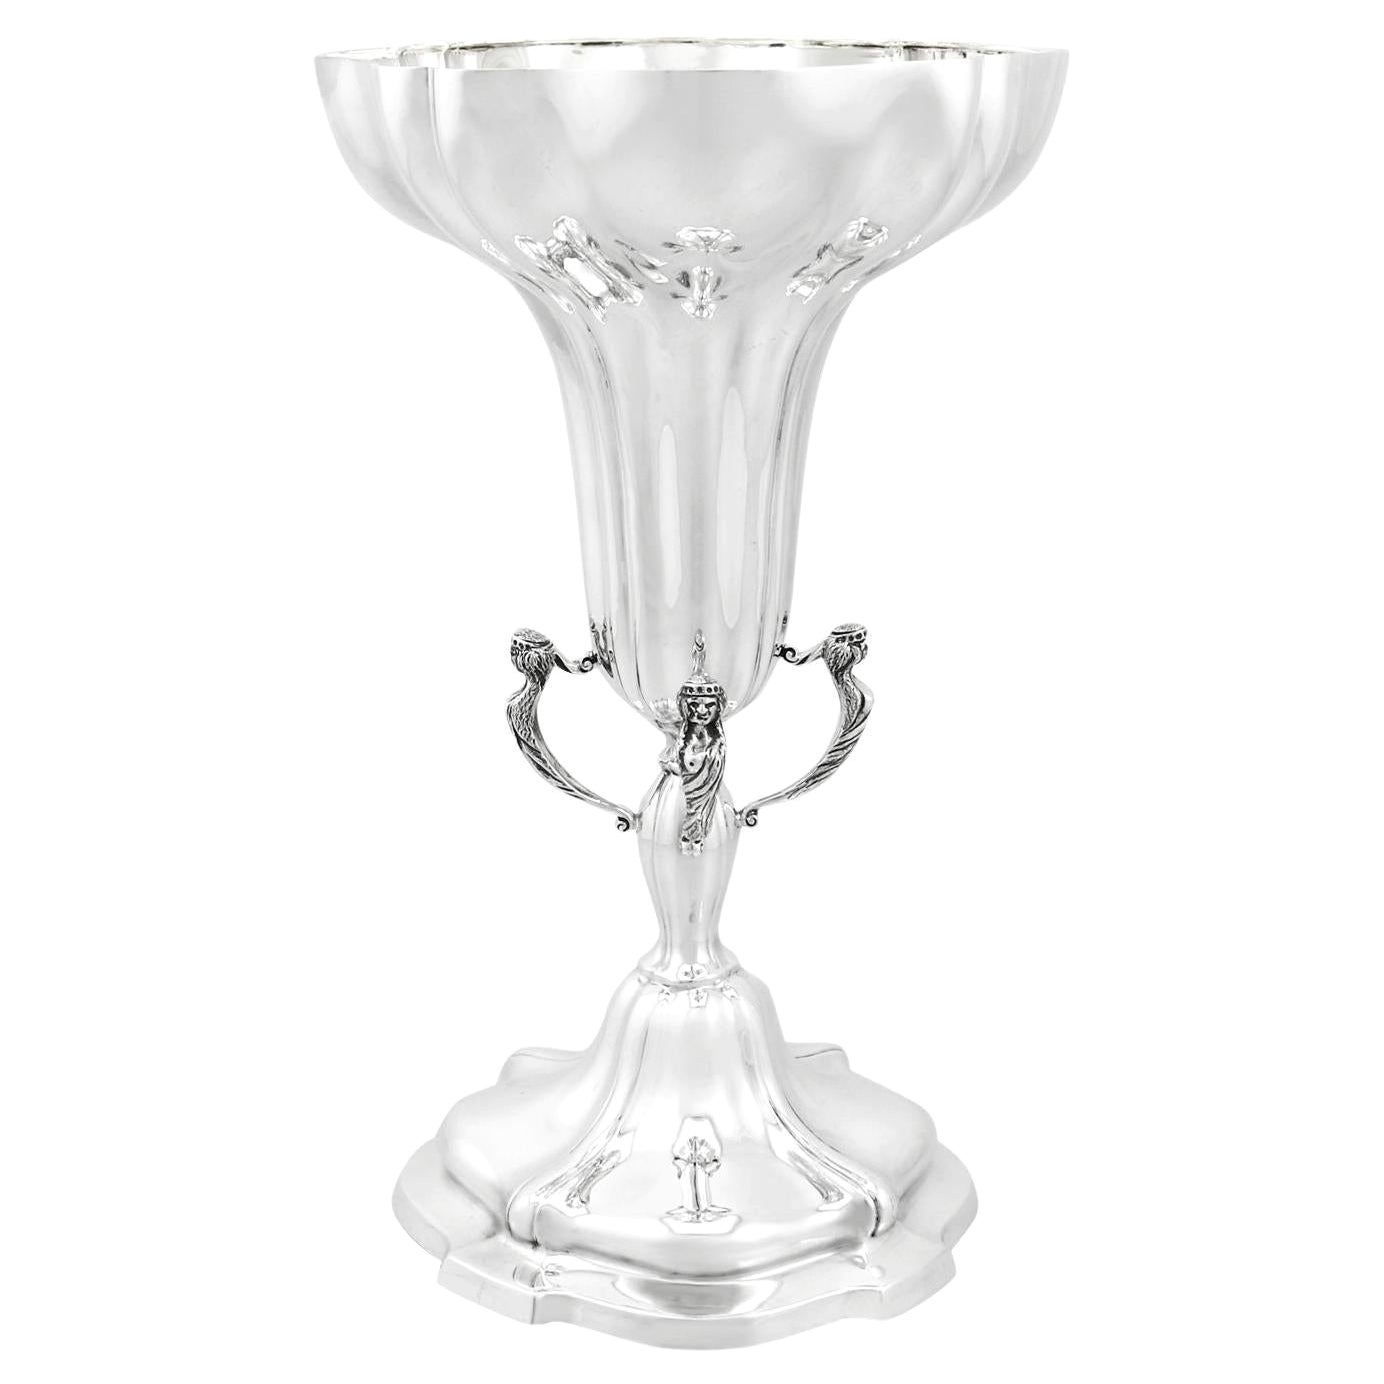 Viners Ltd 1930s Antique Edwardian Sterling Silver Presentation Cup or Vase